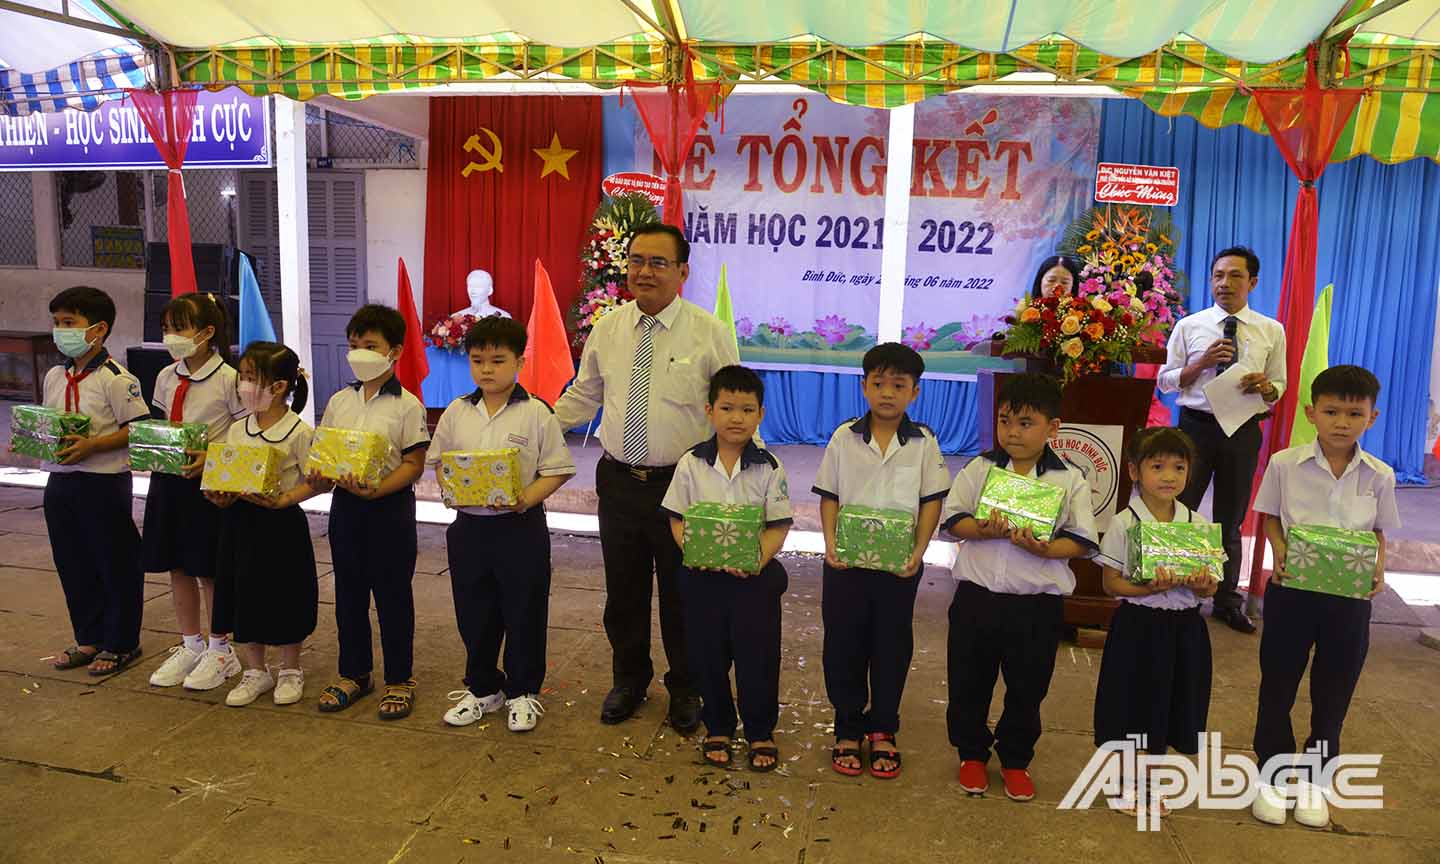 Đồng chí Võ Văn Bình trao thưởng cho các em học sinh có thành tích xuất săc trong năm học 2021 - 2022.